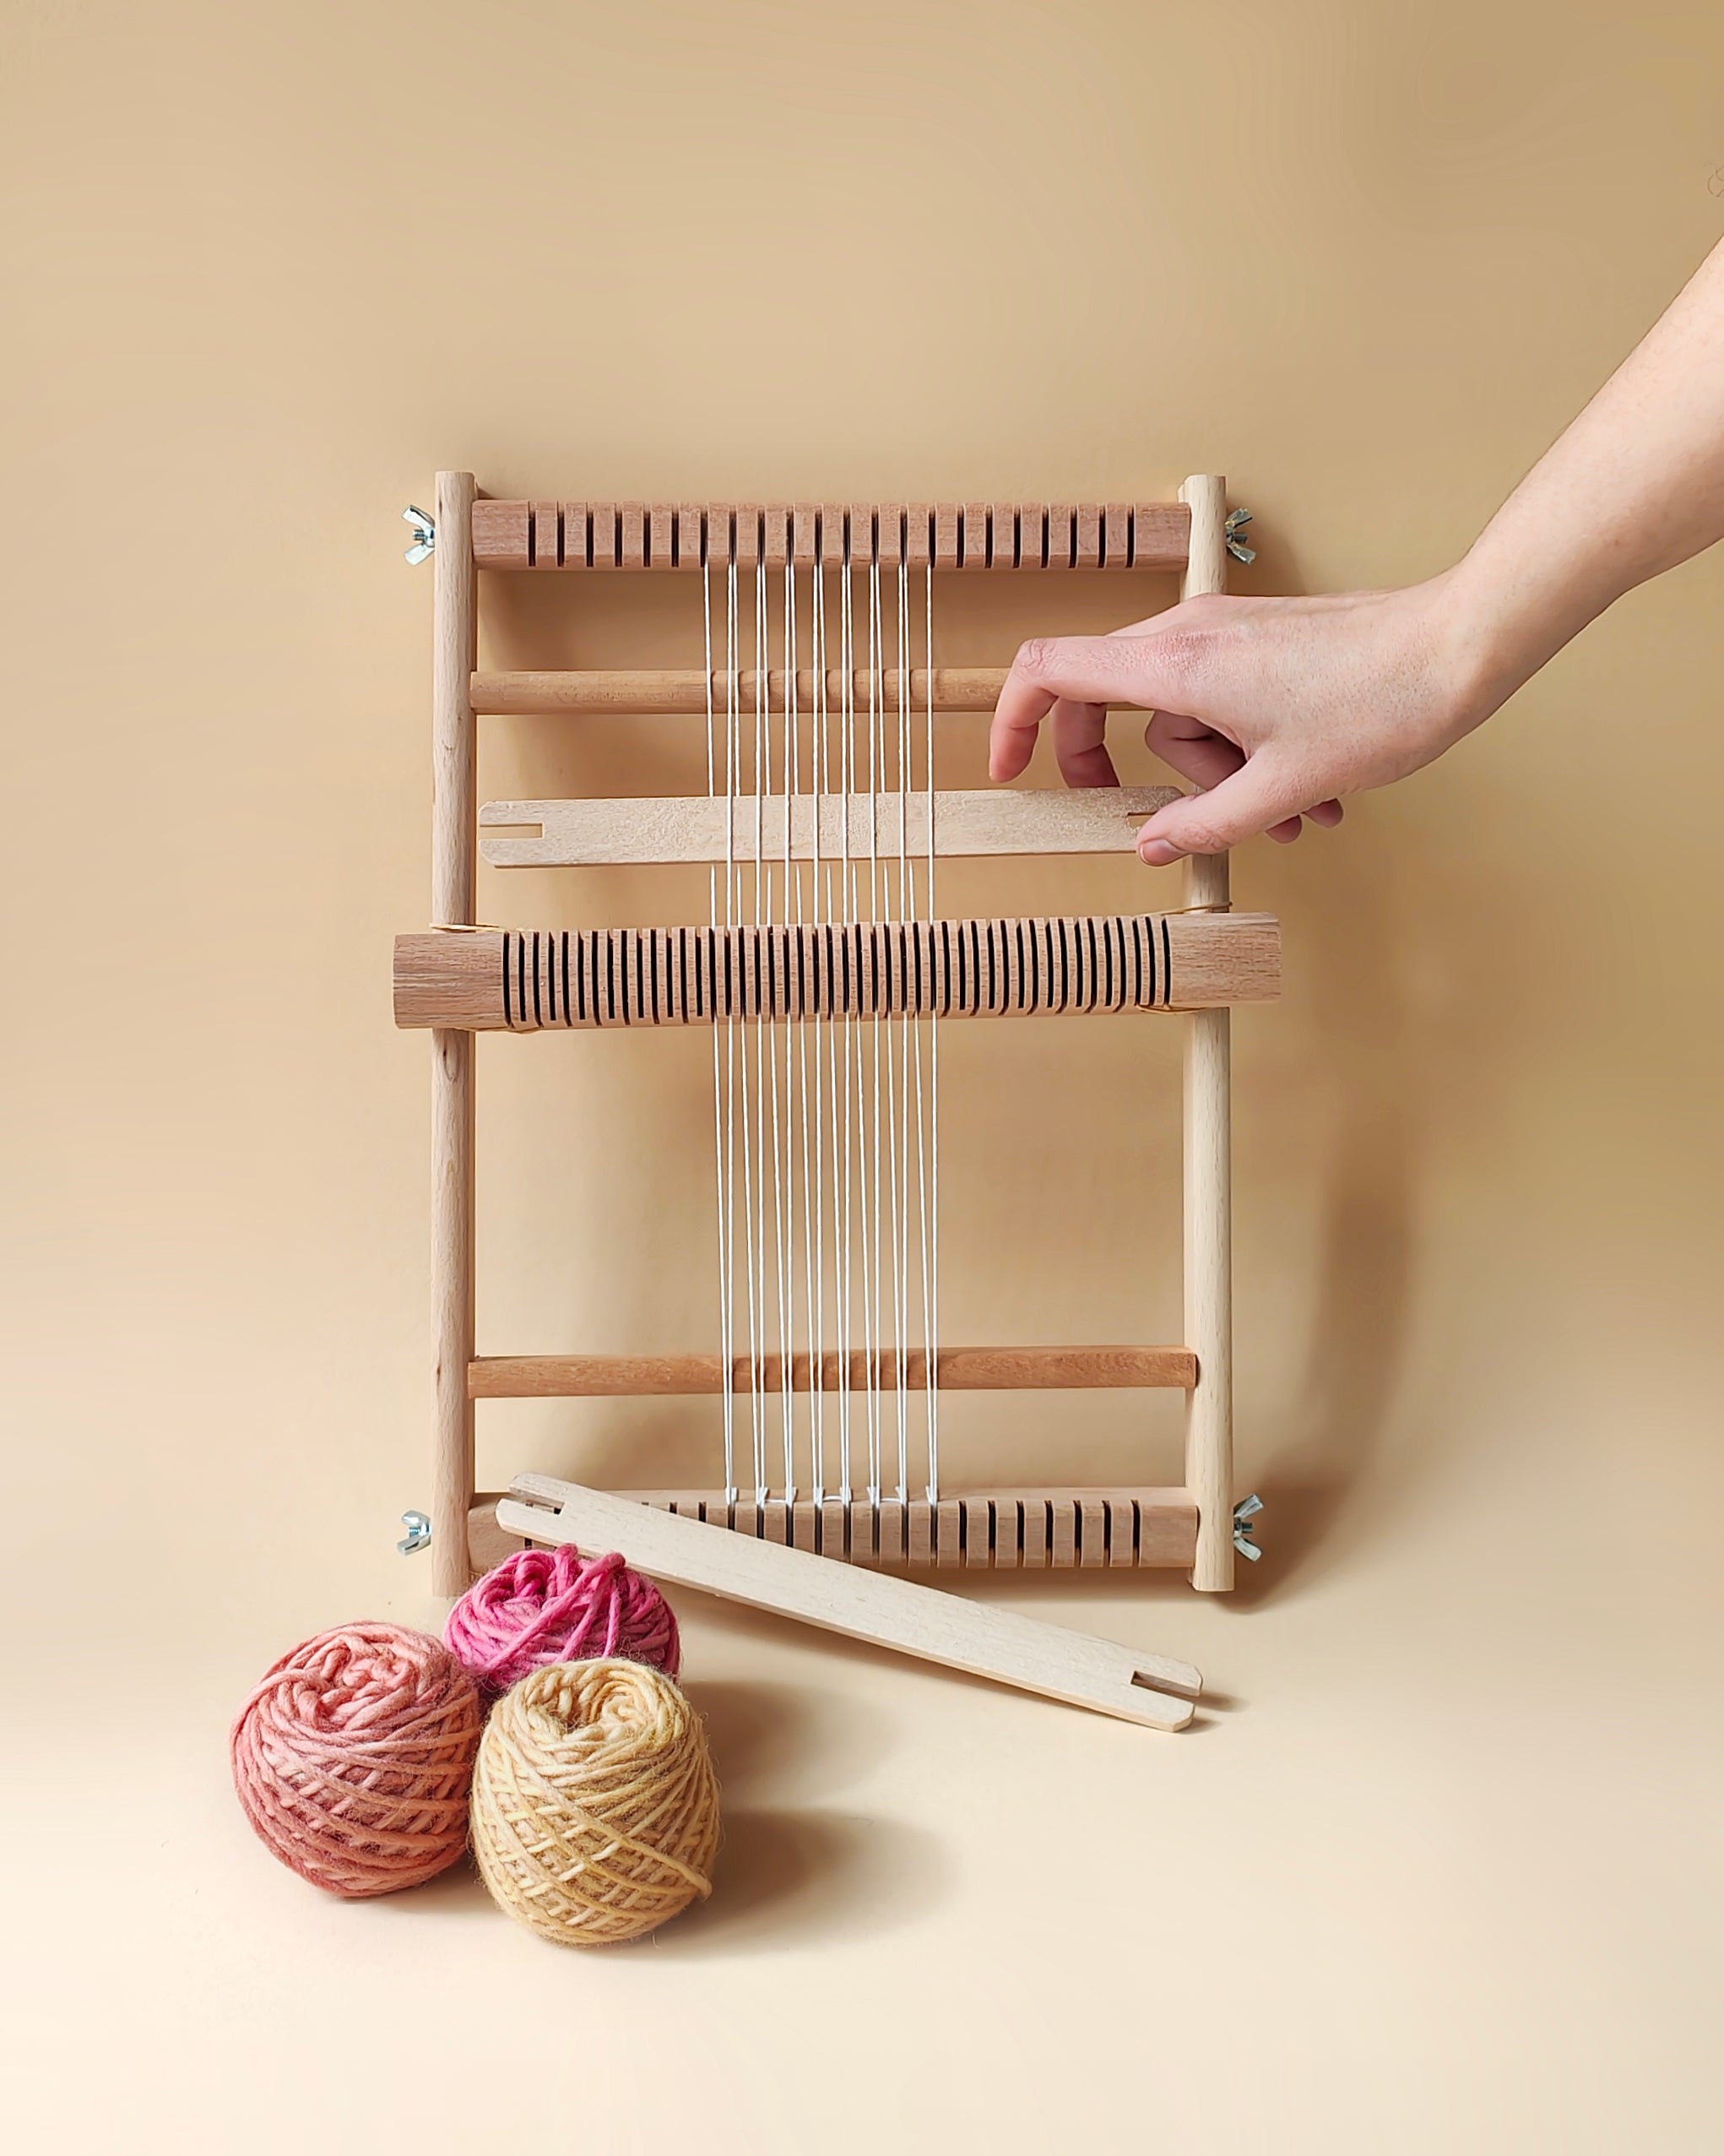 Weaving Loom for Beginners, 10-inch Weaving Loom Kit 